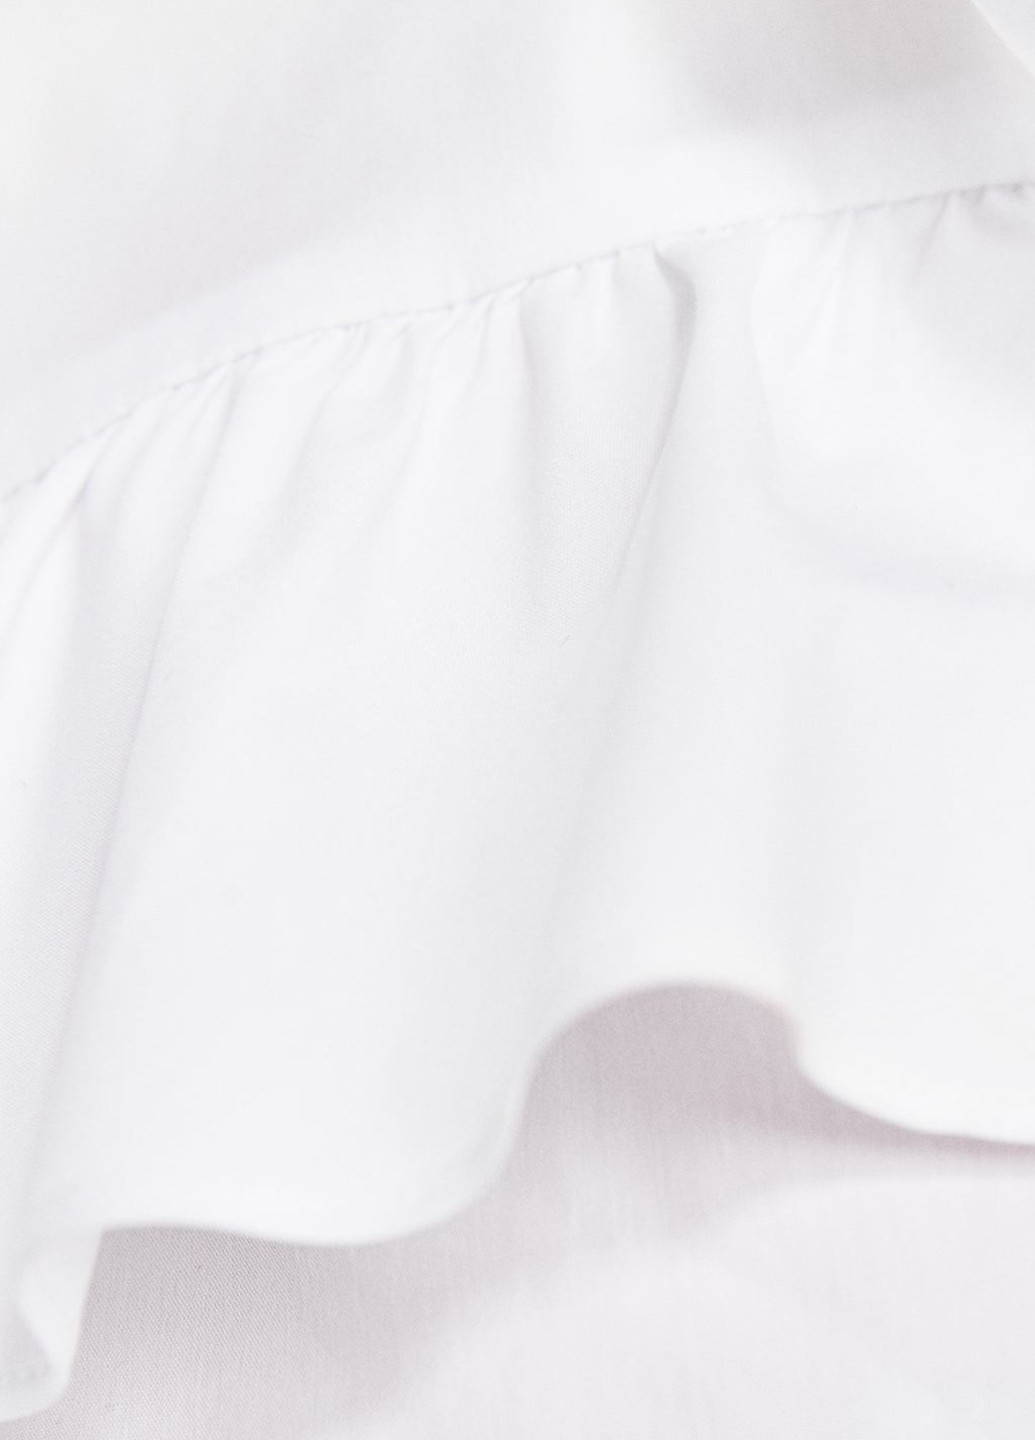 Белая демисезонная блуза Zara